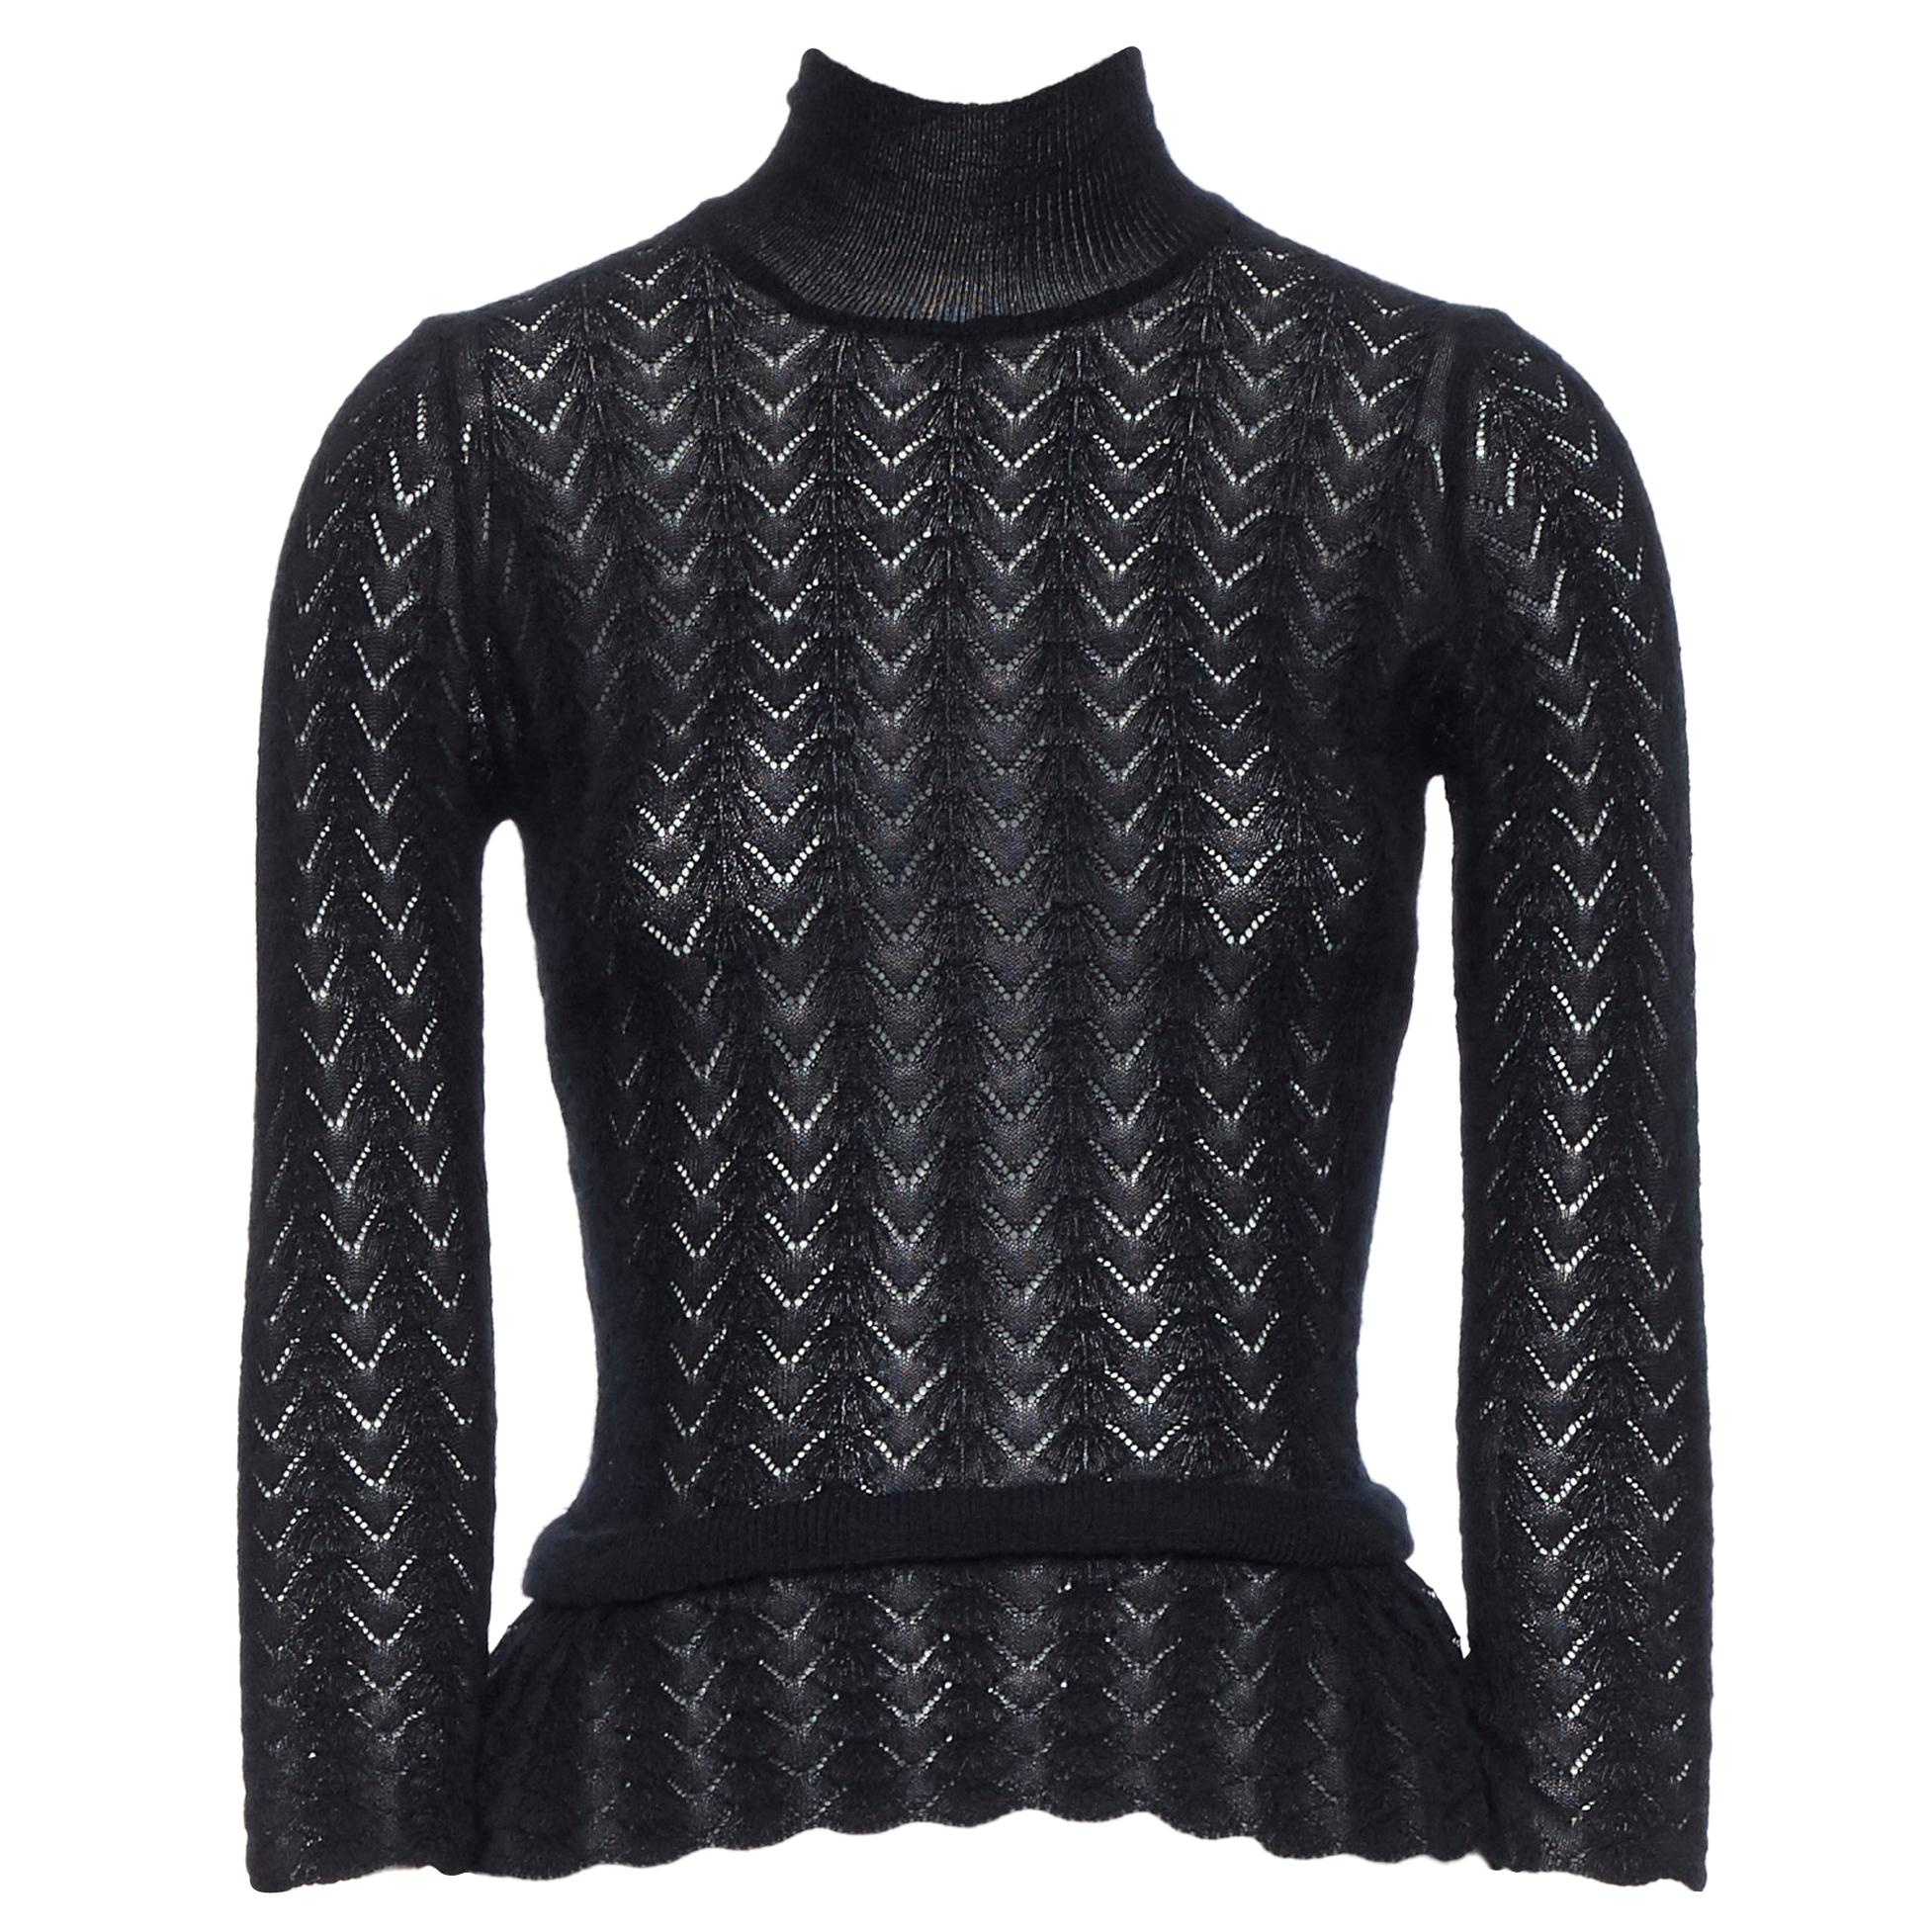 LOUIS VUITTON 100% cashmere black lace loose knit  turtleneck sweater top M